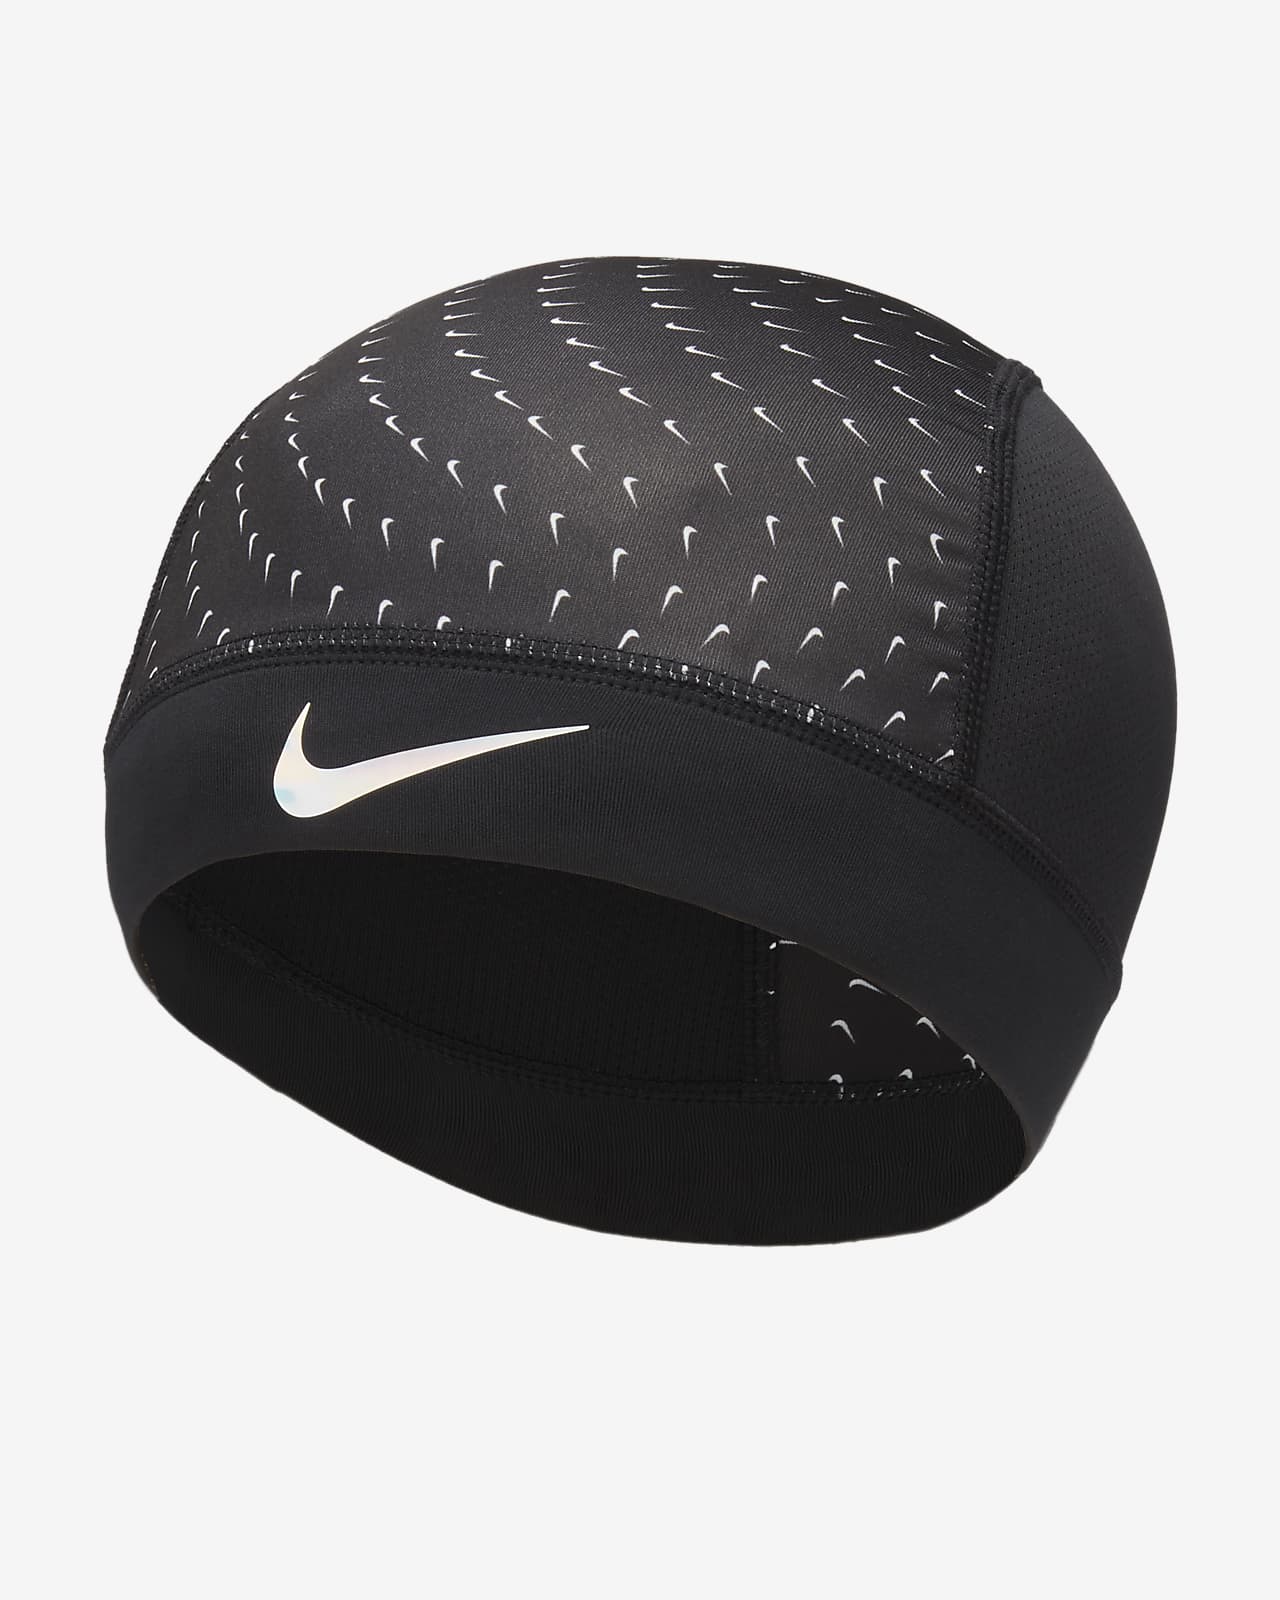 Nike Football Pro Dri-FIT Skull Cap - Frank's Sports Shop